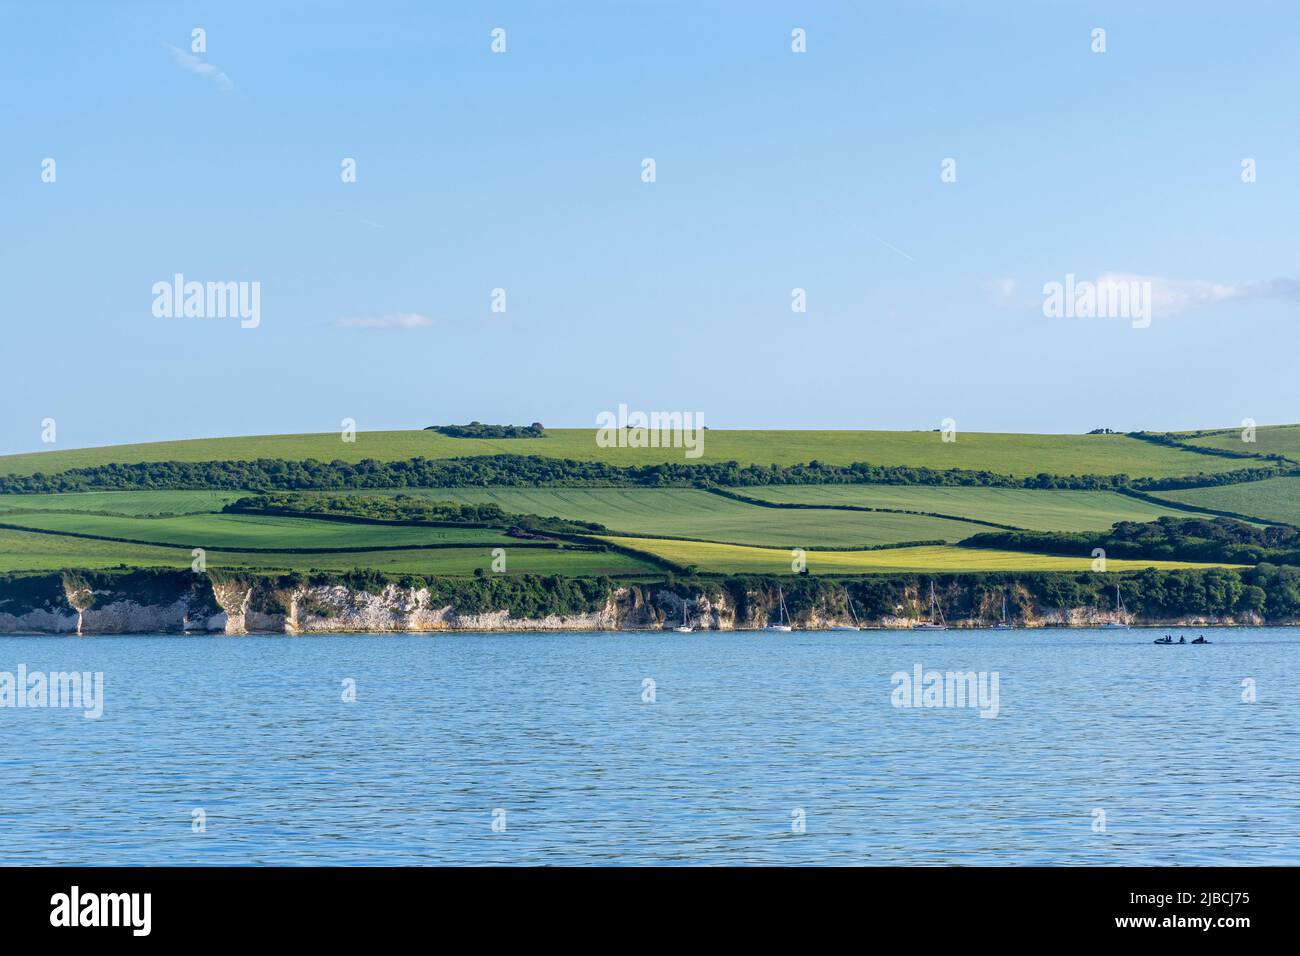 Blick auf die jurassic Coast vom Meer aus gesehen, mit landwirtschaftlichem Land und felsiger Küste, Dorset, England, Großbritannien. Dorset Küstenlandschaft. Stockfoto